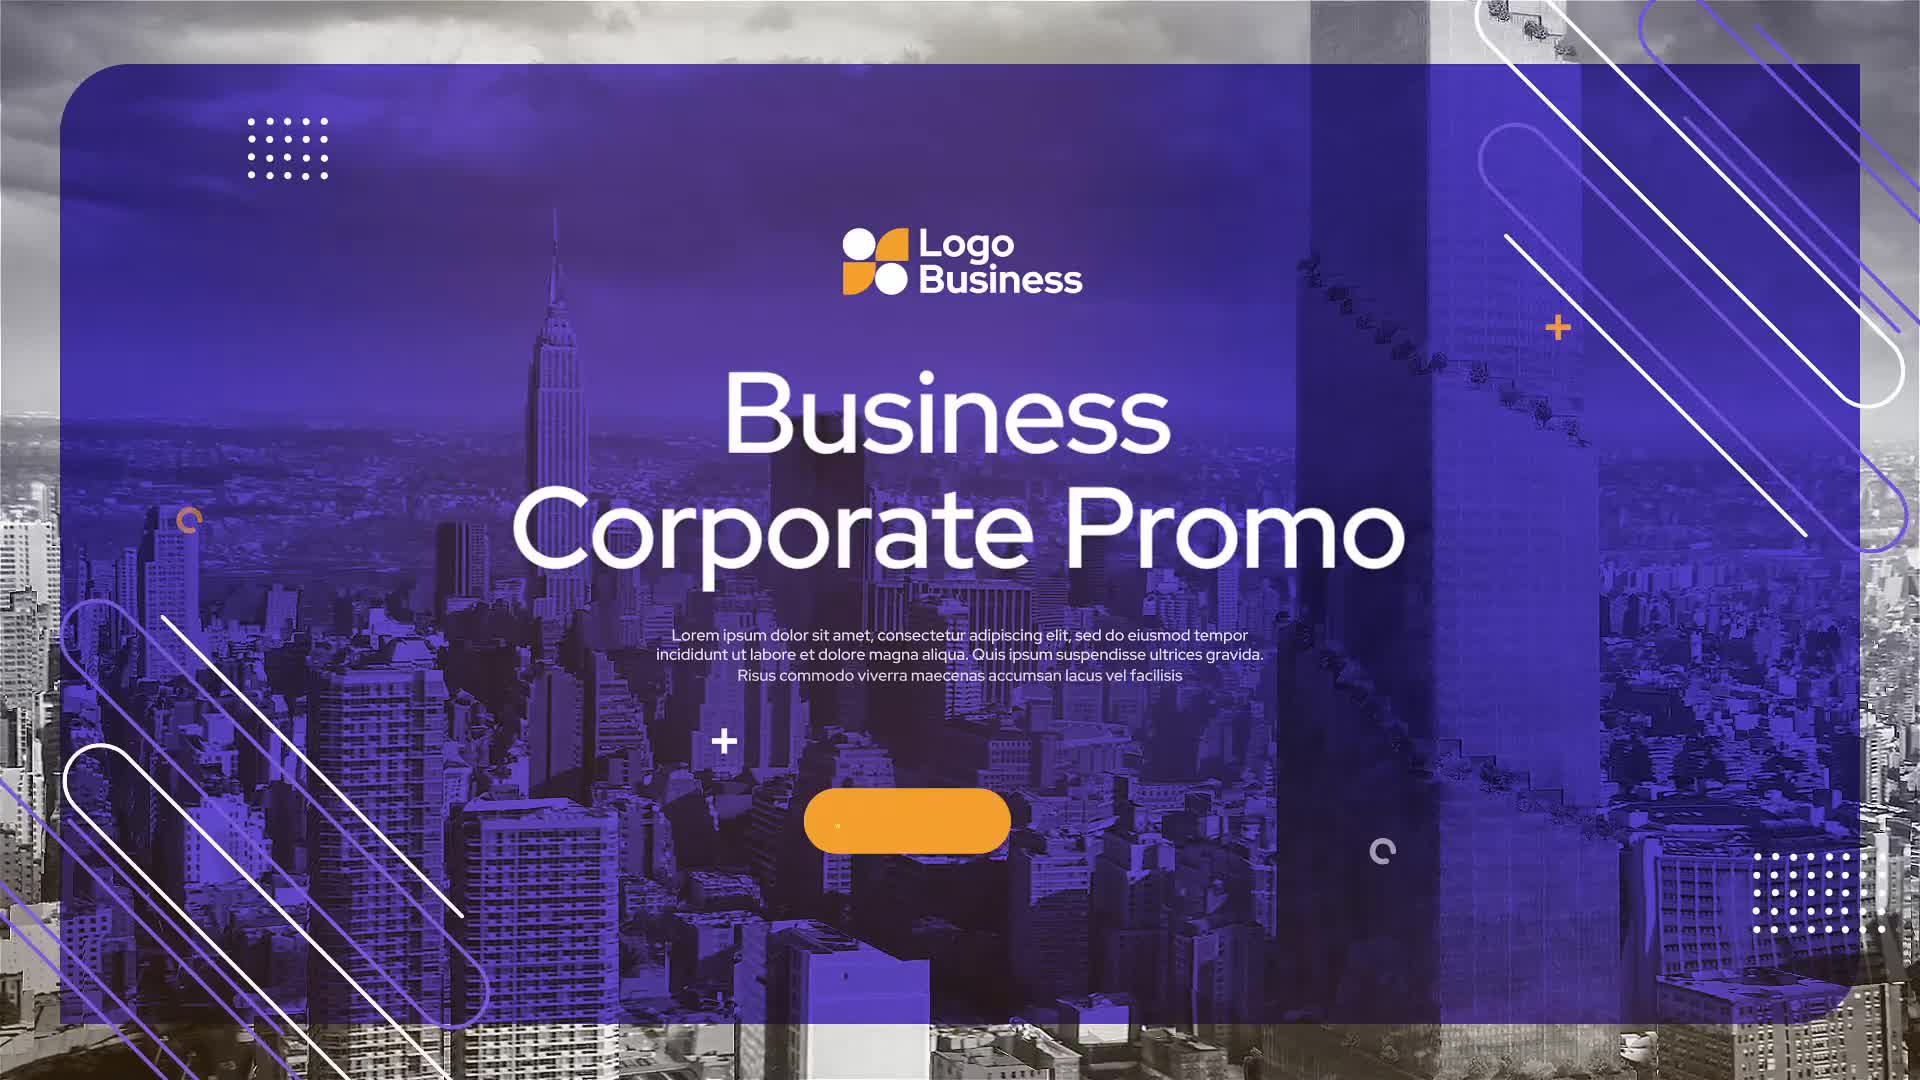 Business Corporate Promo Videohive 30584682 Premiere Pro Image 1